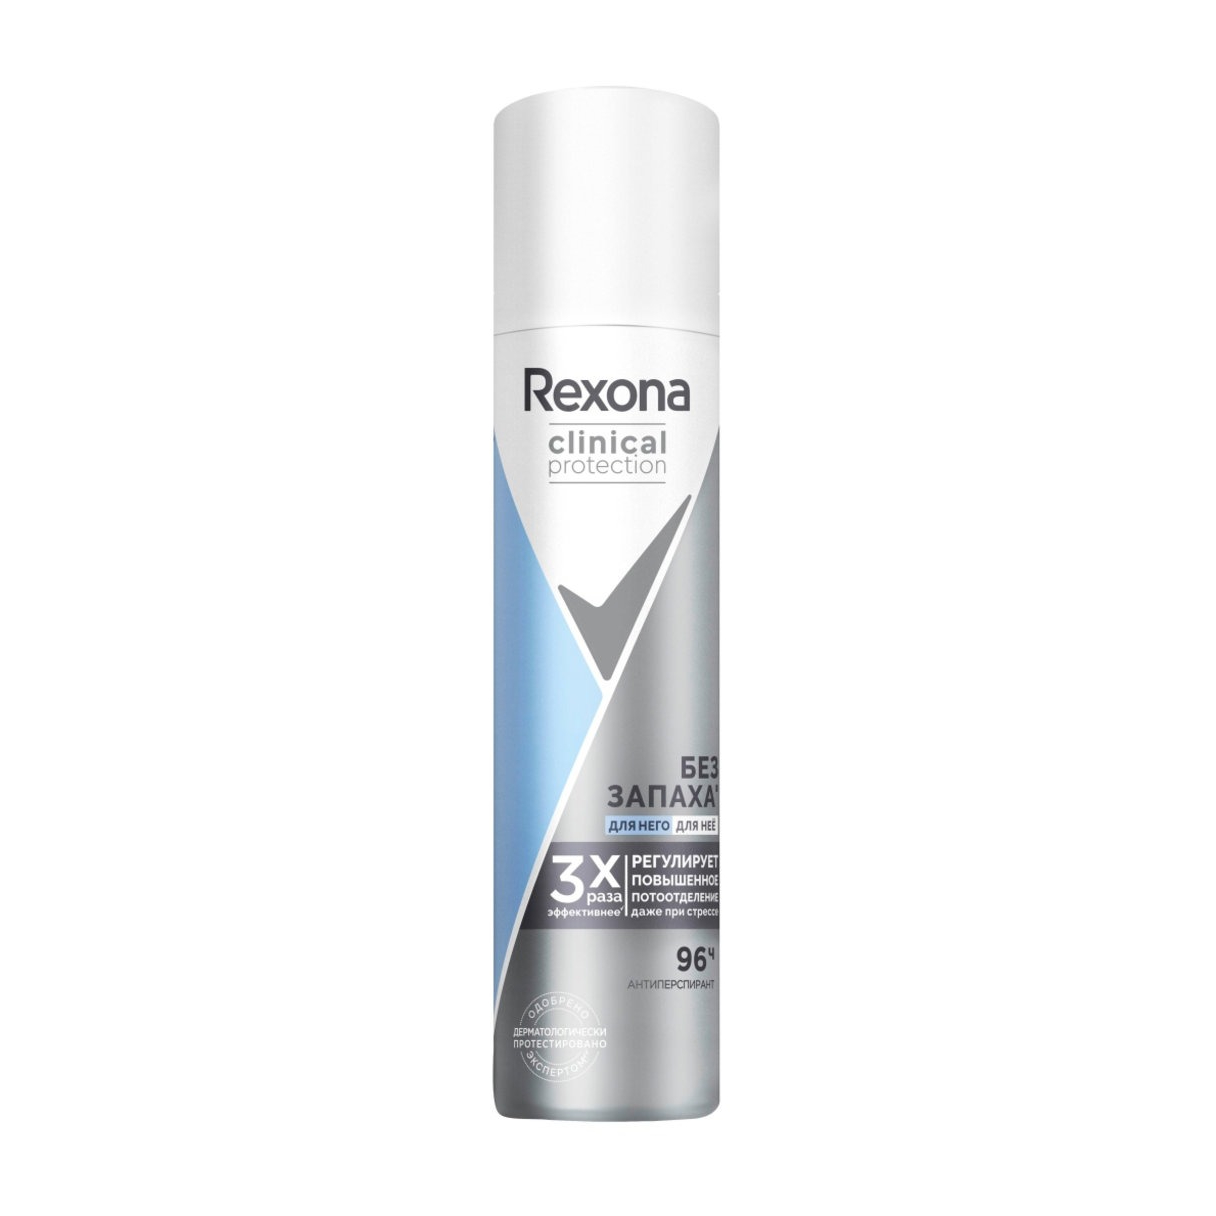 Антиперспирант Rexona аэрозоль без запаха 75 мл део спрей rexona clinical protection men защита и уверенность 150 мл 2 шт